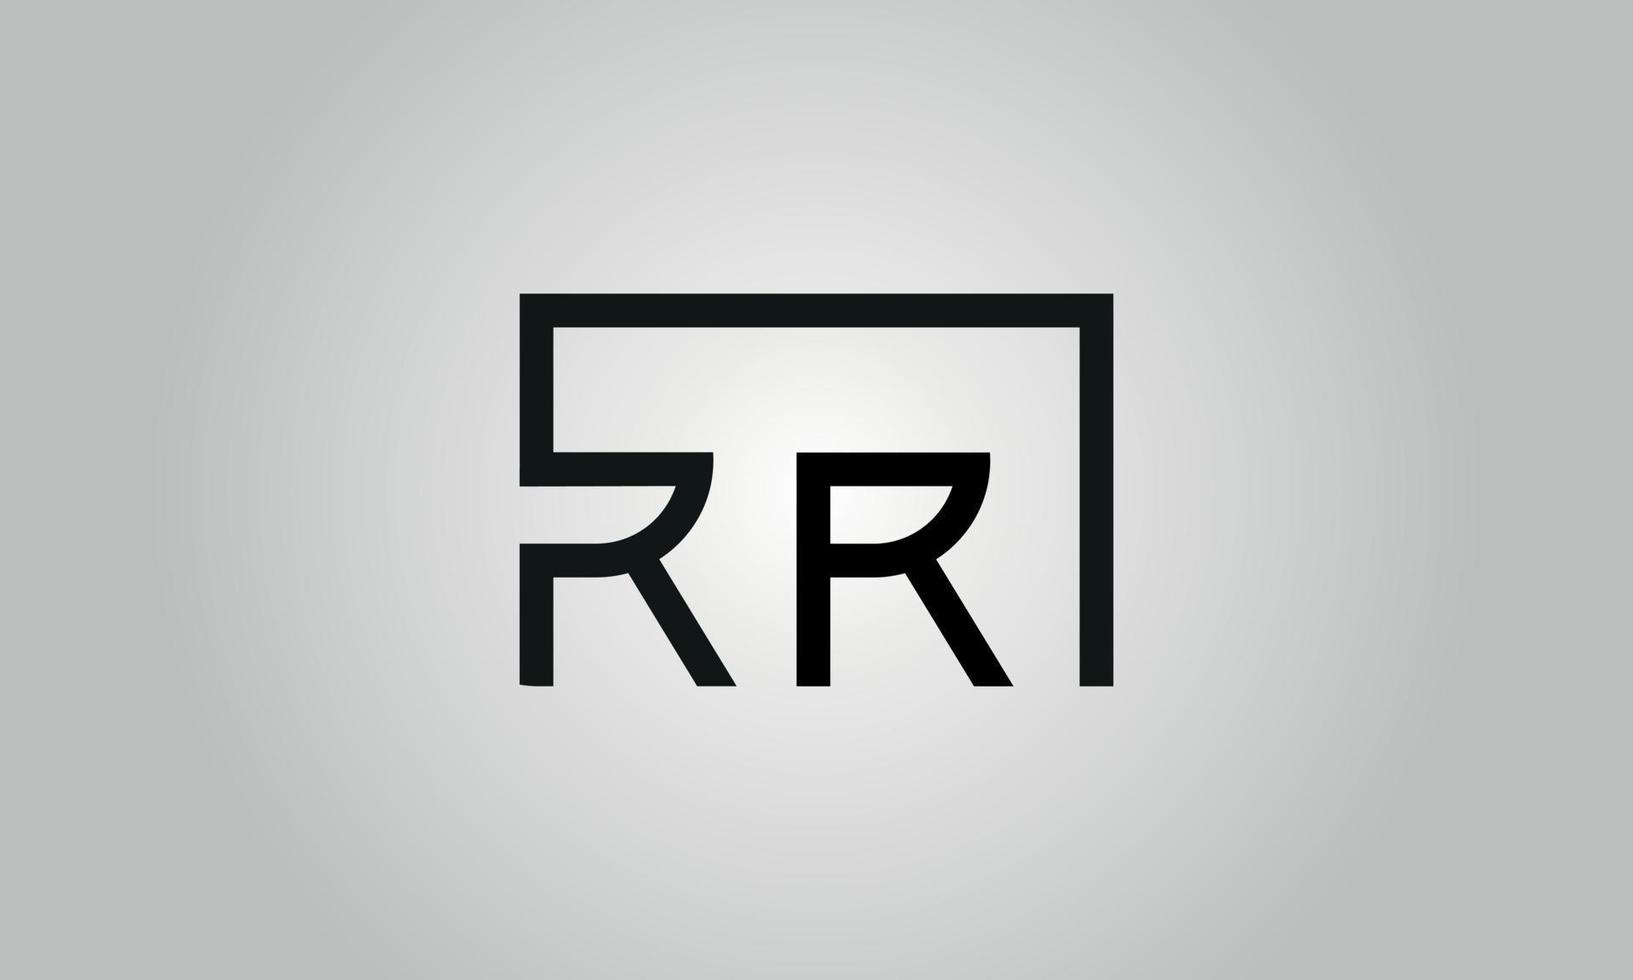 création de logo lettre rr. logo rr avec forme carrée dans le modèle vectoriel gratuit de couleurs noires.